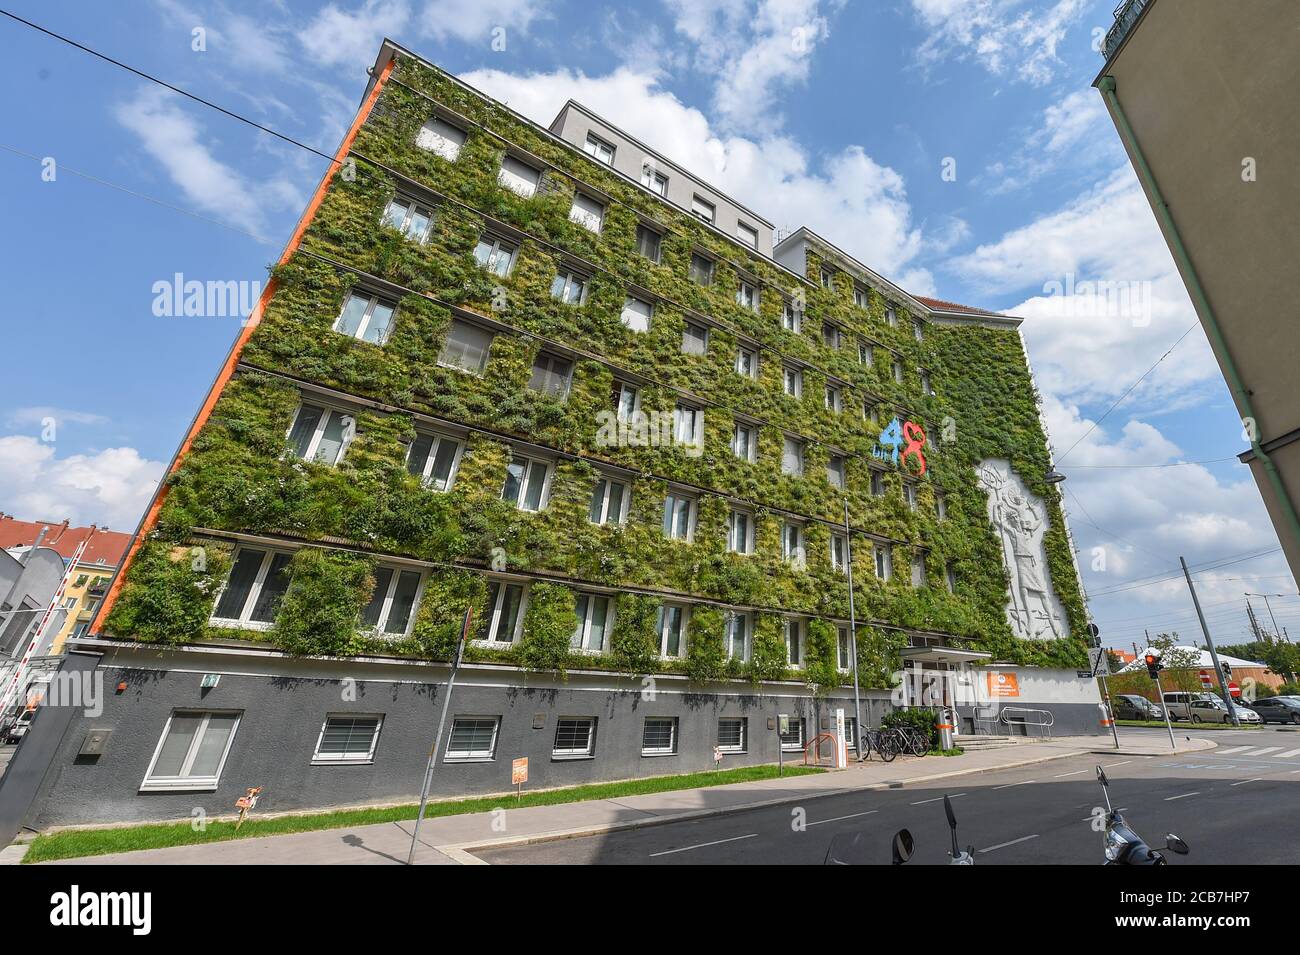 (200811) -- WIEN, 11. August 2020 (Xinhua) -- das Foto vom 22. Juli 2020 zeigt eine grüne Fassade des MA 48 Hauptsitzes in Wien, Österreich. Wien, die Hauptstadt Österreichs, ist berühmt für seine Musik. Wien hat auch die Aufmerksamkeit der Welt durch sein grünes Stadtentwicklungsmodell erregt, das grüne Reisen, städtische Ökologisierung und grüne Lebensstile befürwortet. (Xinhua/Guo Chen) Stockfoto